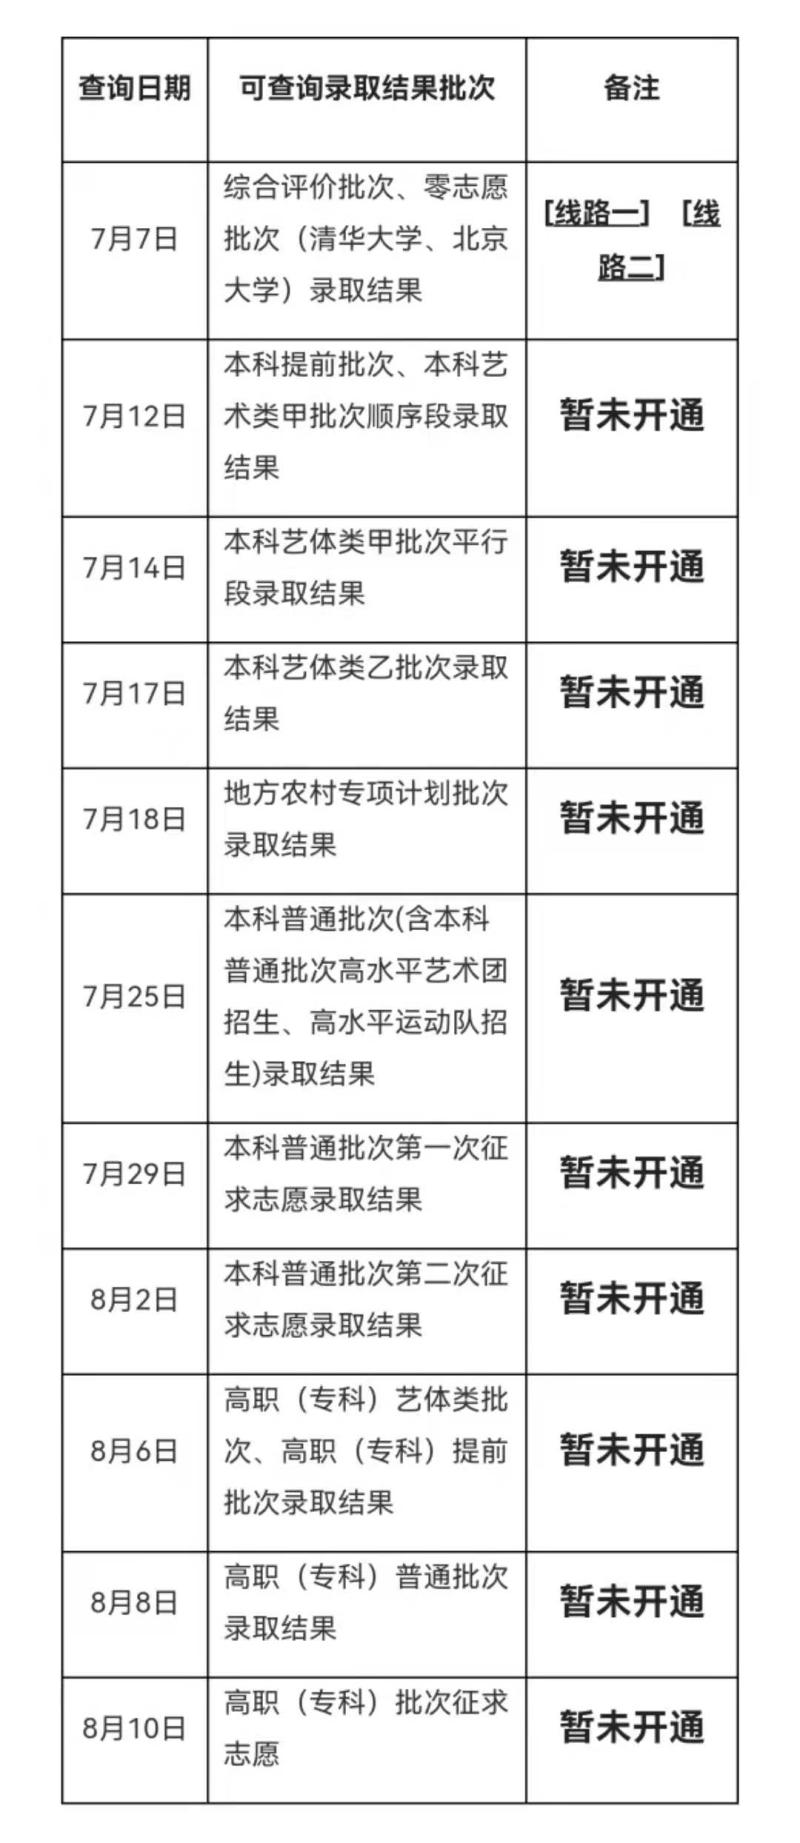 各批次录取结果查询时间表,上海市教育考试院供图